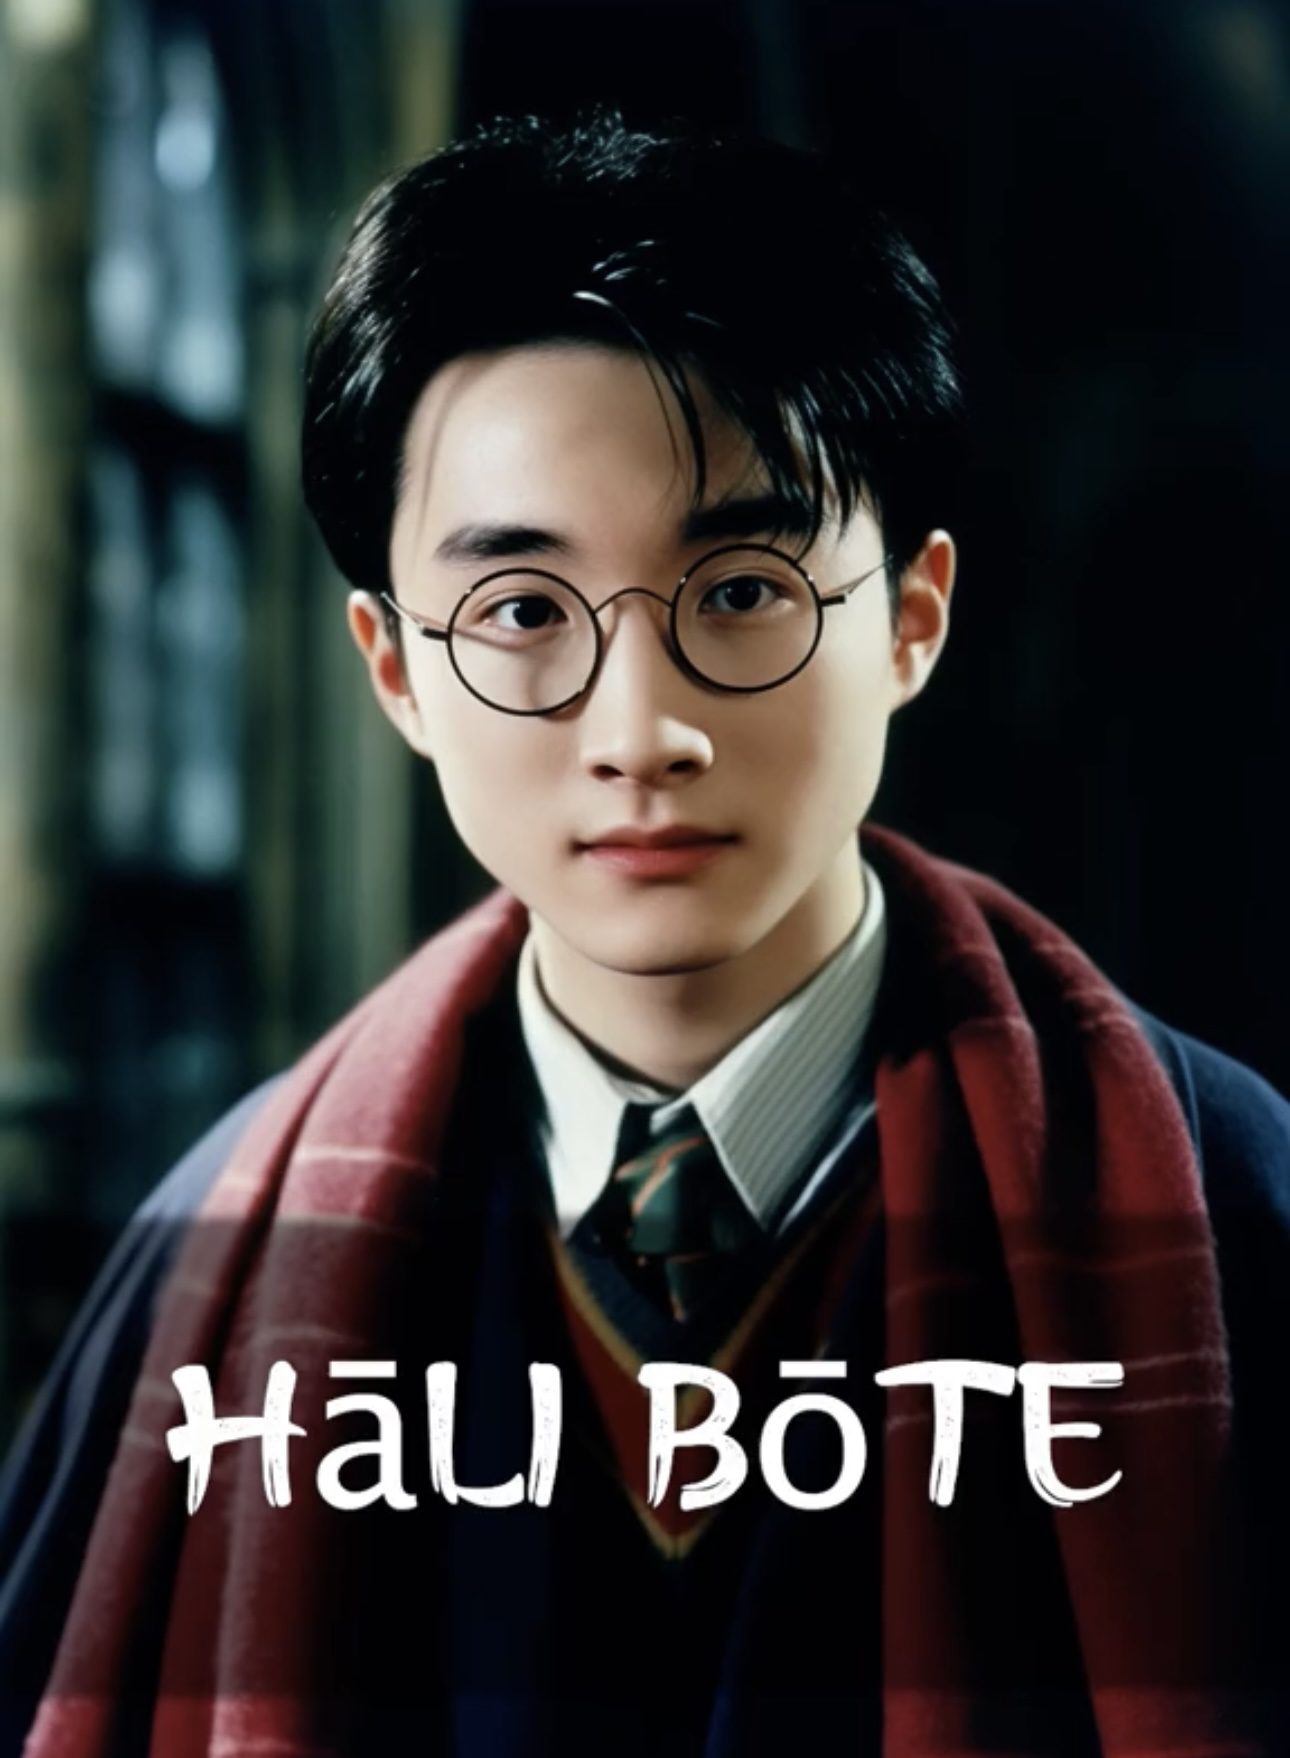 Lạ lùng Harry Potter phiên bản Hoa ngữ, nữ chính gây bất ngờ vì đẹp như minh tinh - Ảnh 2.